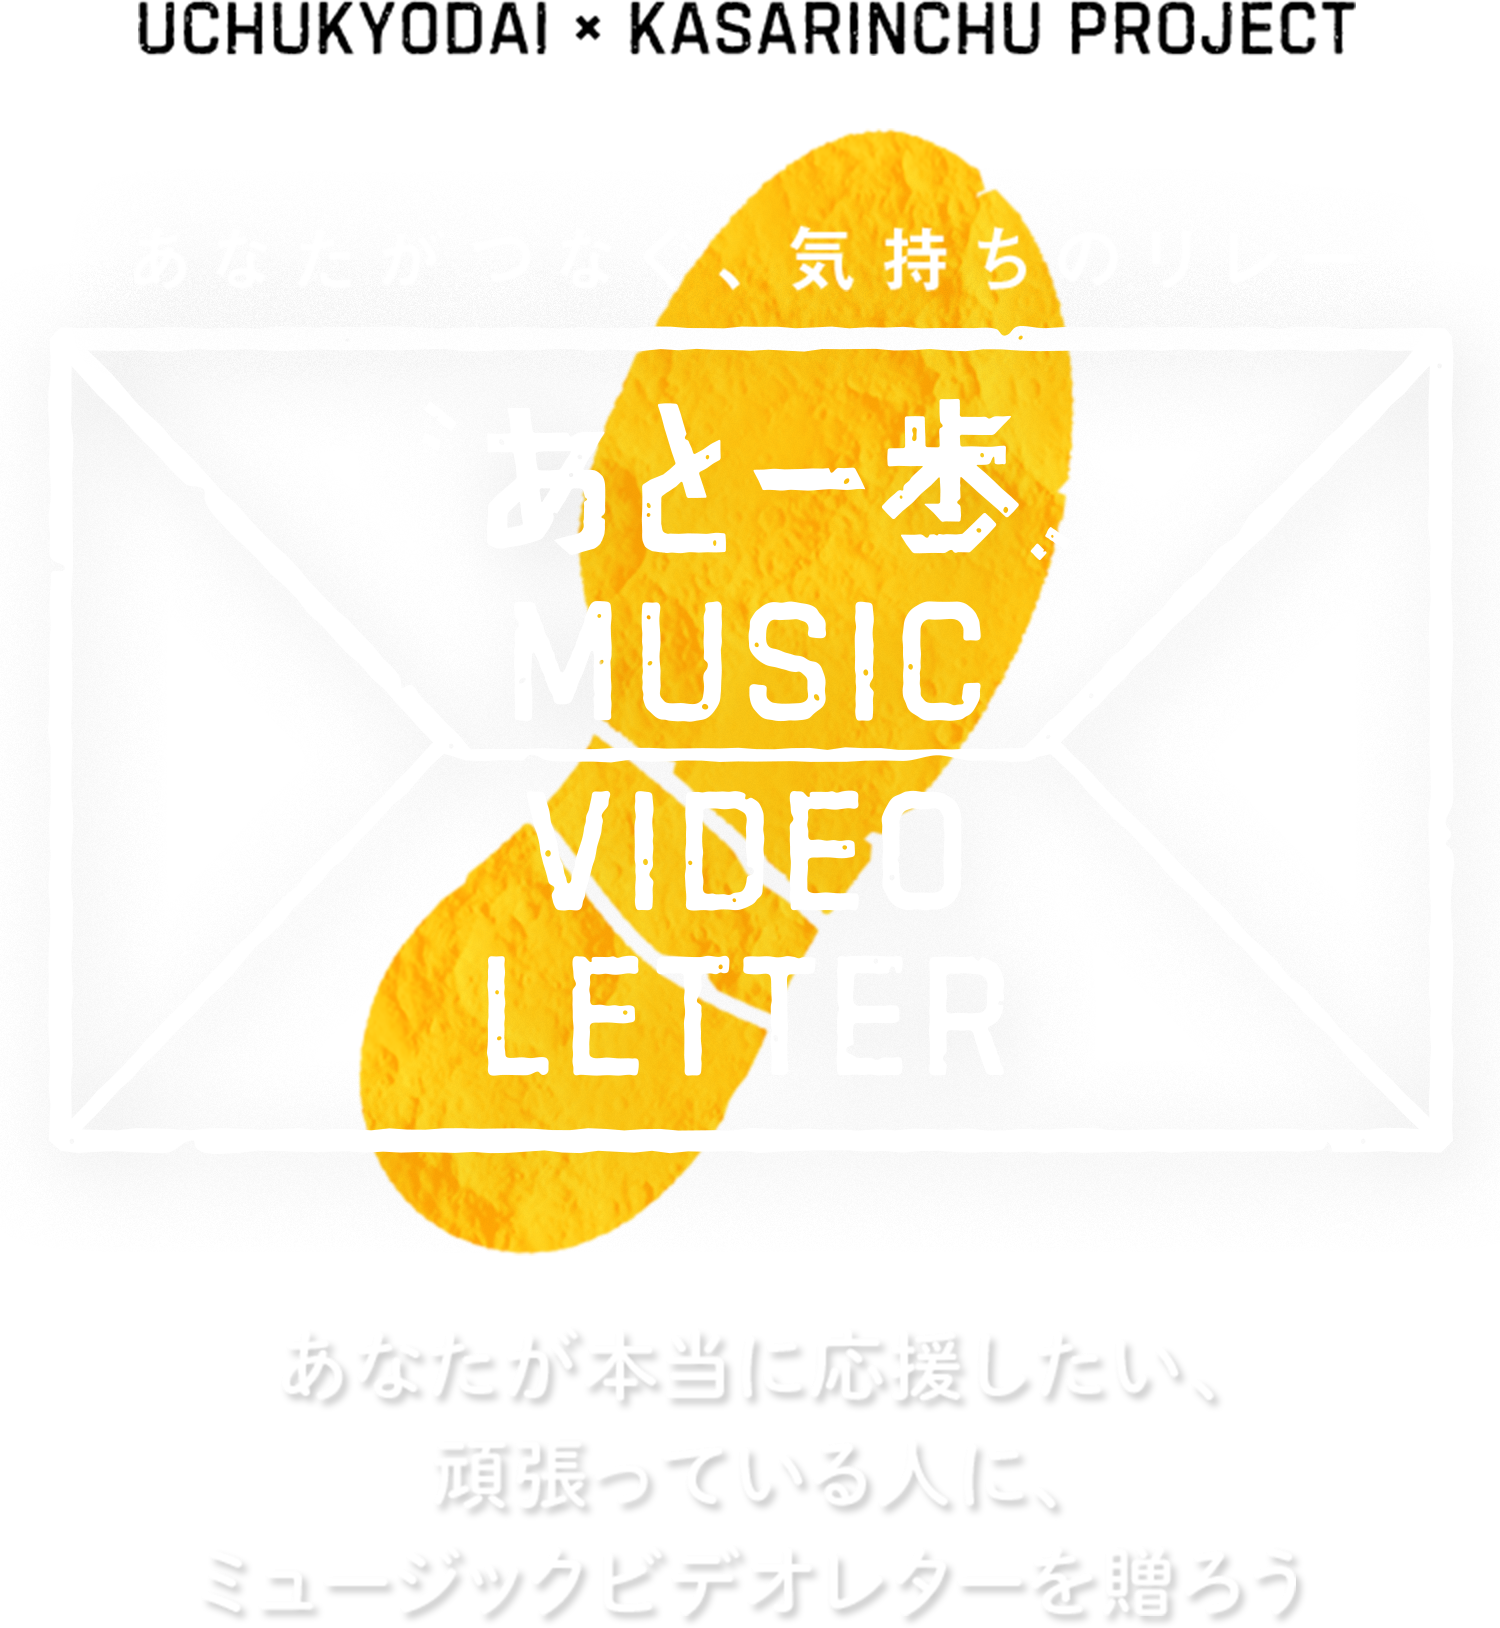 「あと一歩」Music Video LetterUCHUKYODAI × KASARINCHU PROJECT あなたがつなぐ、気持ちのリレー 「あと一歩」Music Video Letter あなたが本当に応援したい、頑張っている人に、ミュージックビデオレターを贈ろう